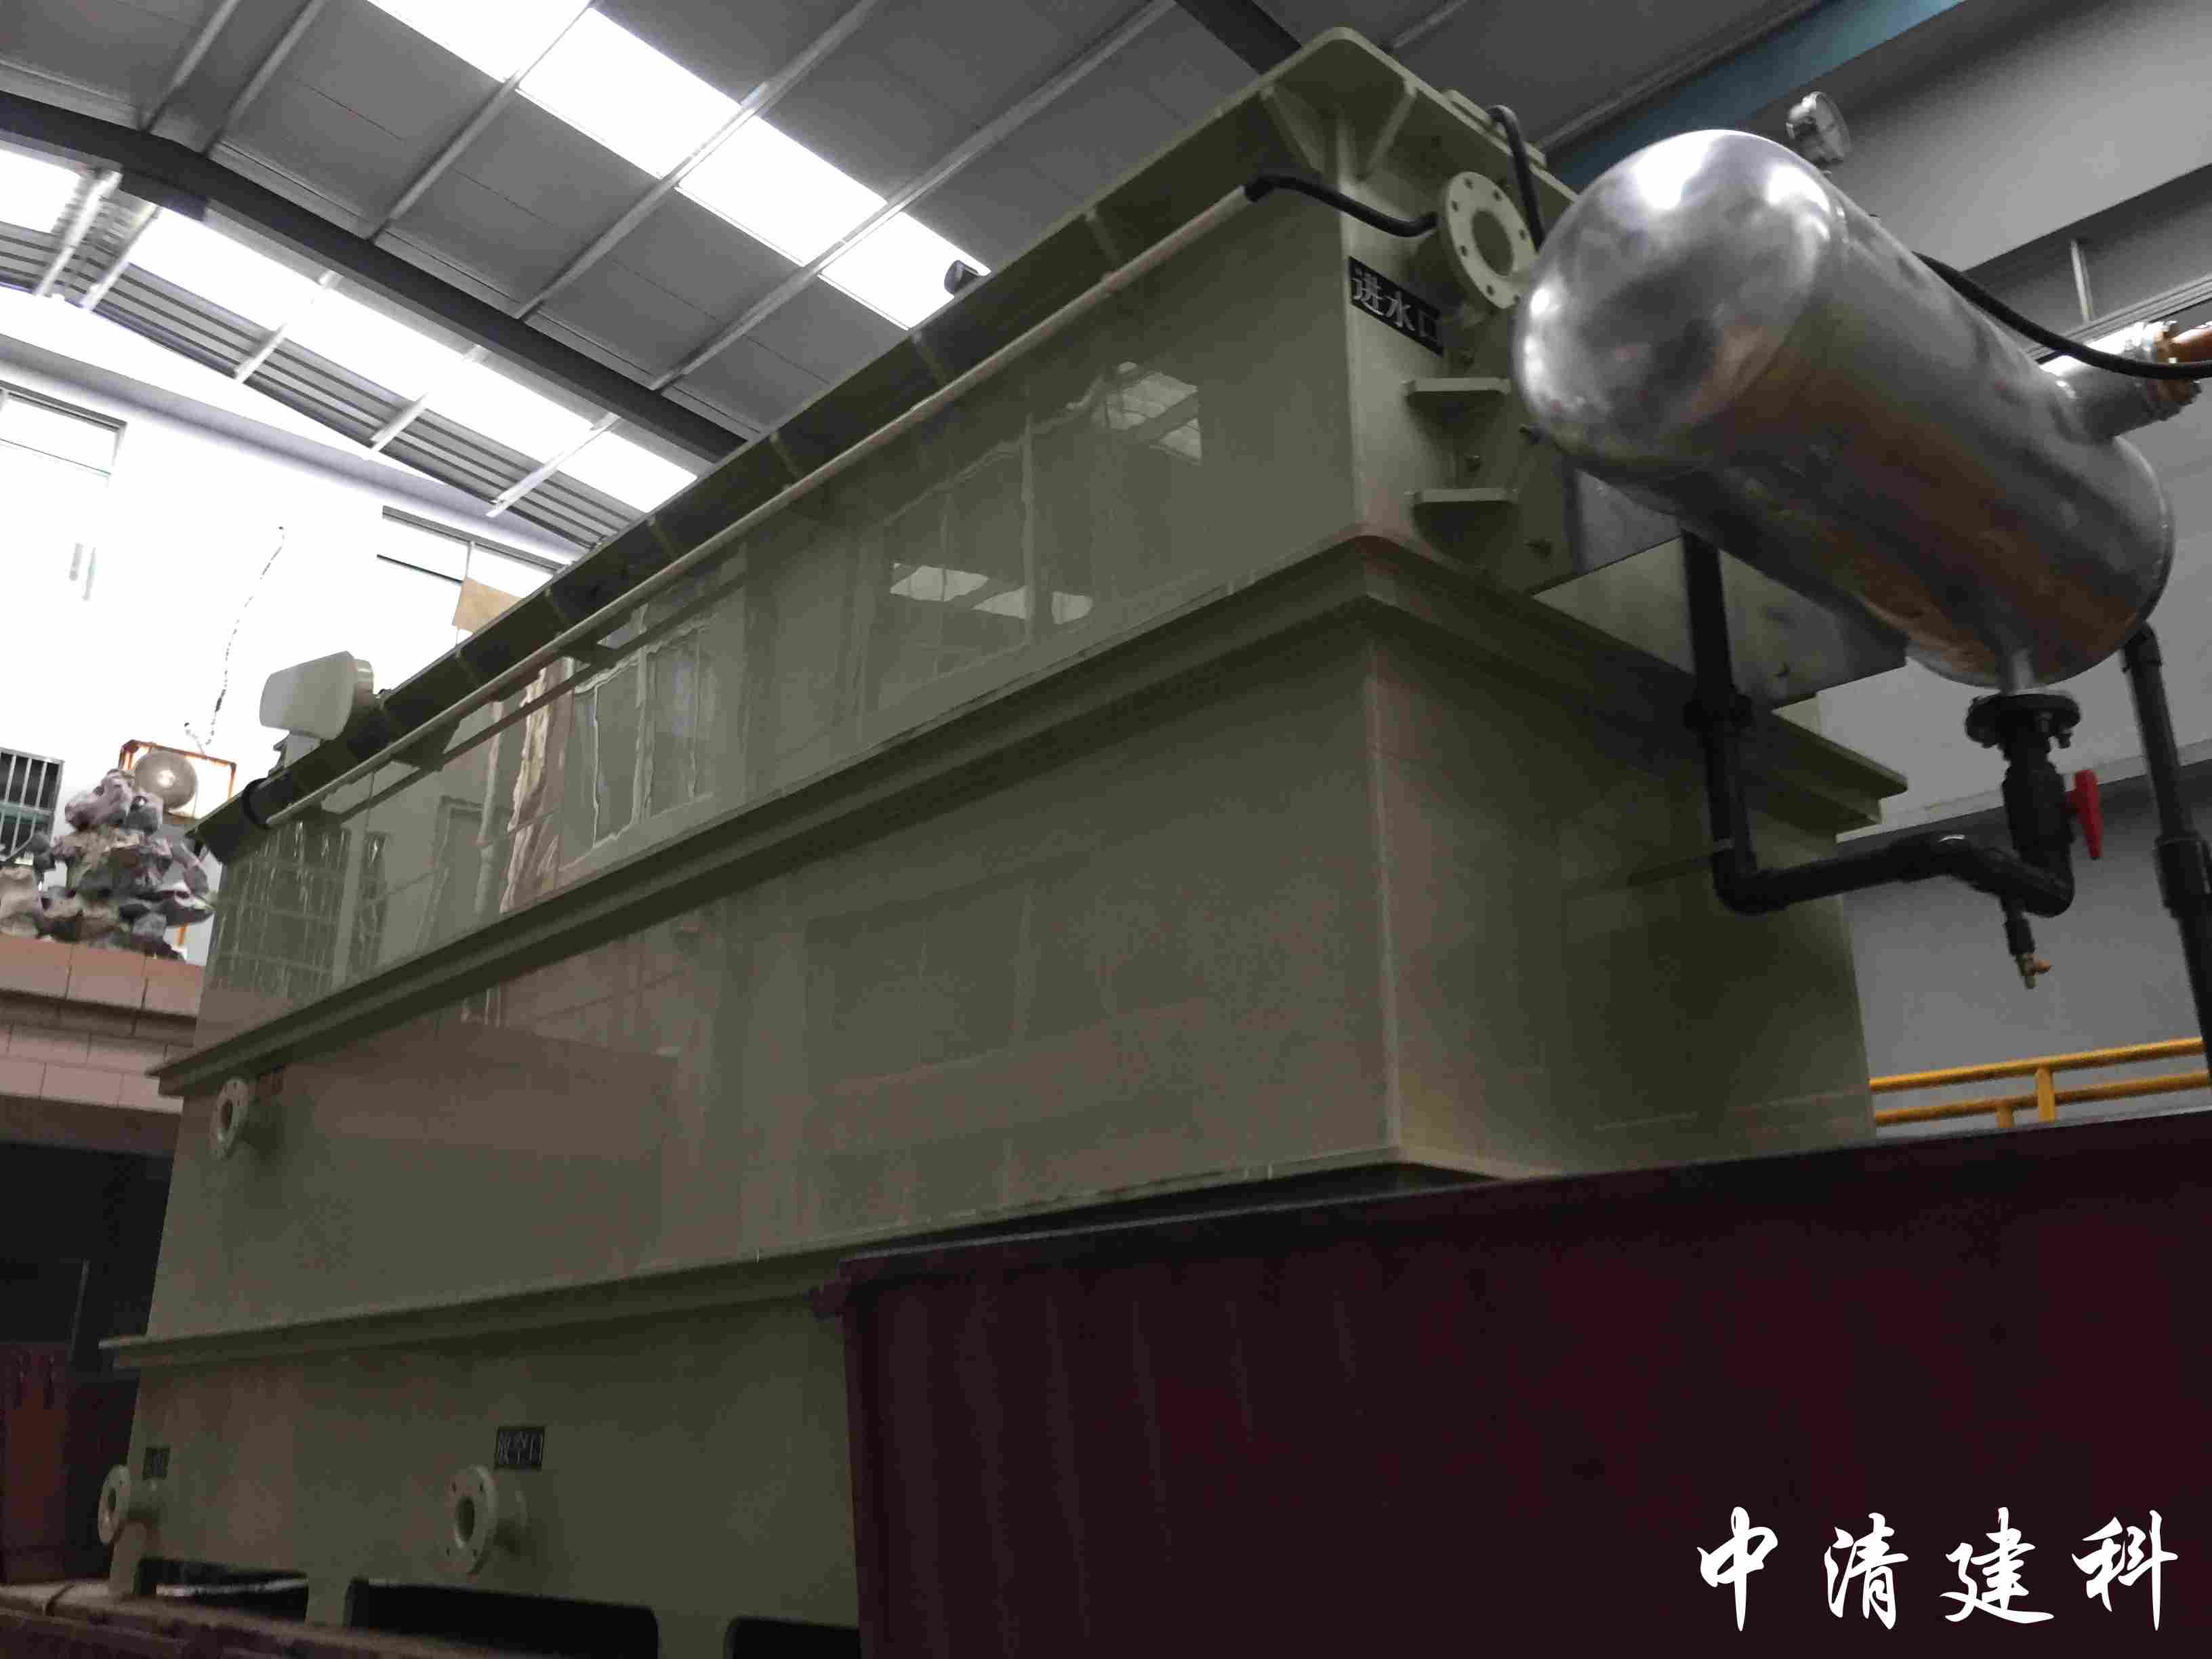 浙江湖州客户订购的2台ZF-10T（PP材质，溶气罐不锈钢304）组合气浮圆满发货 第2张